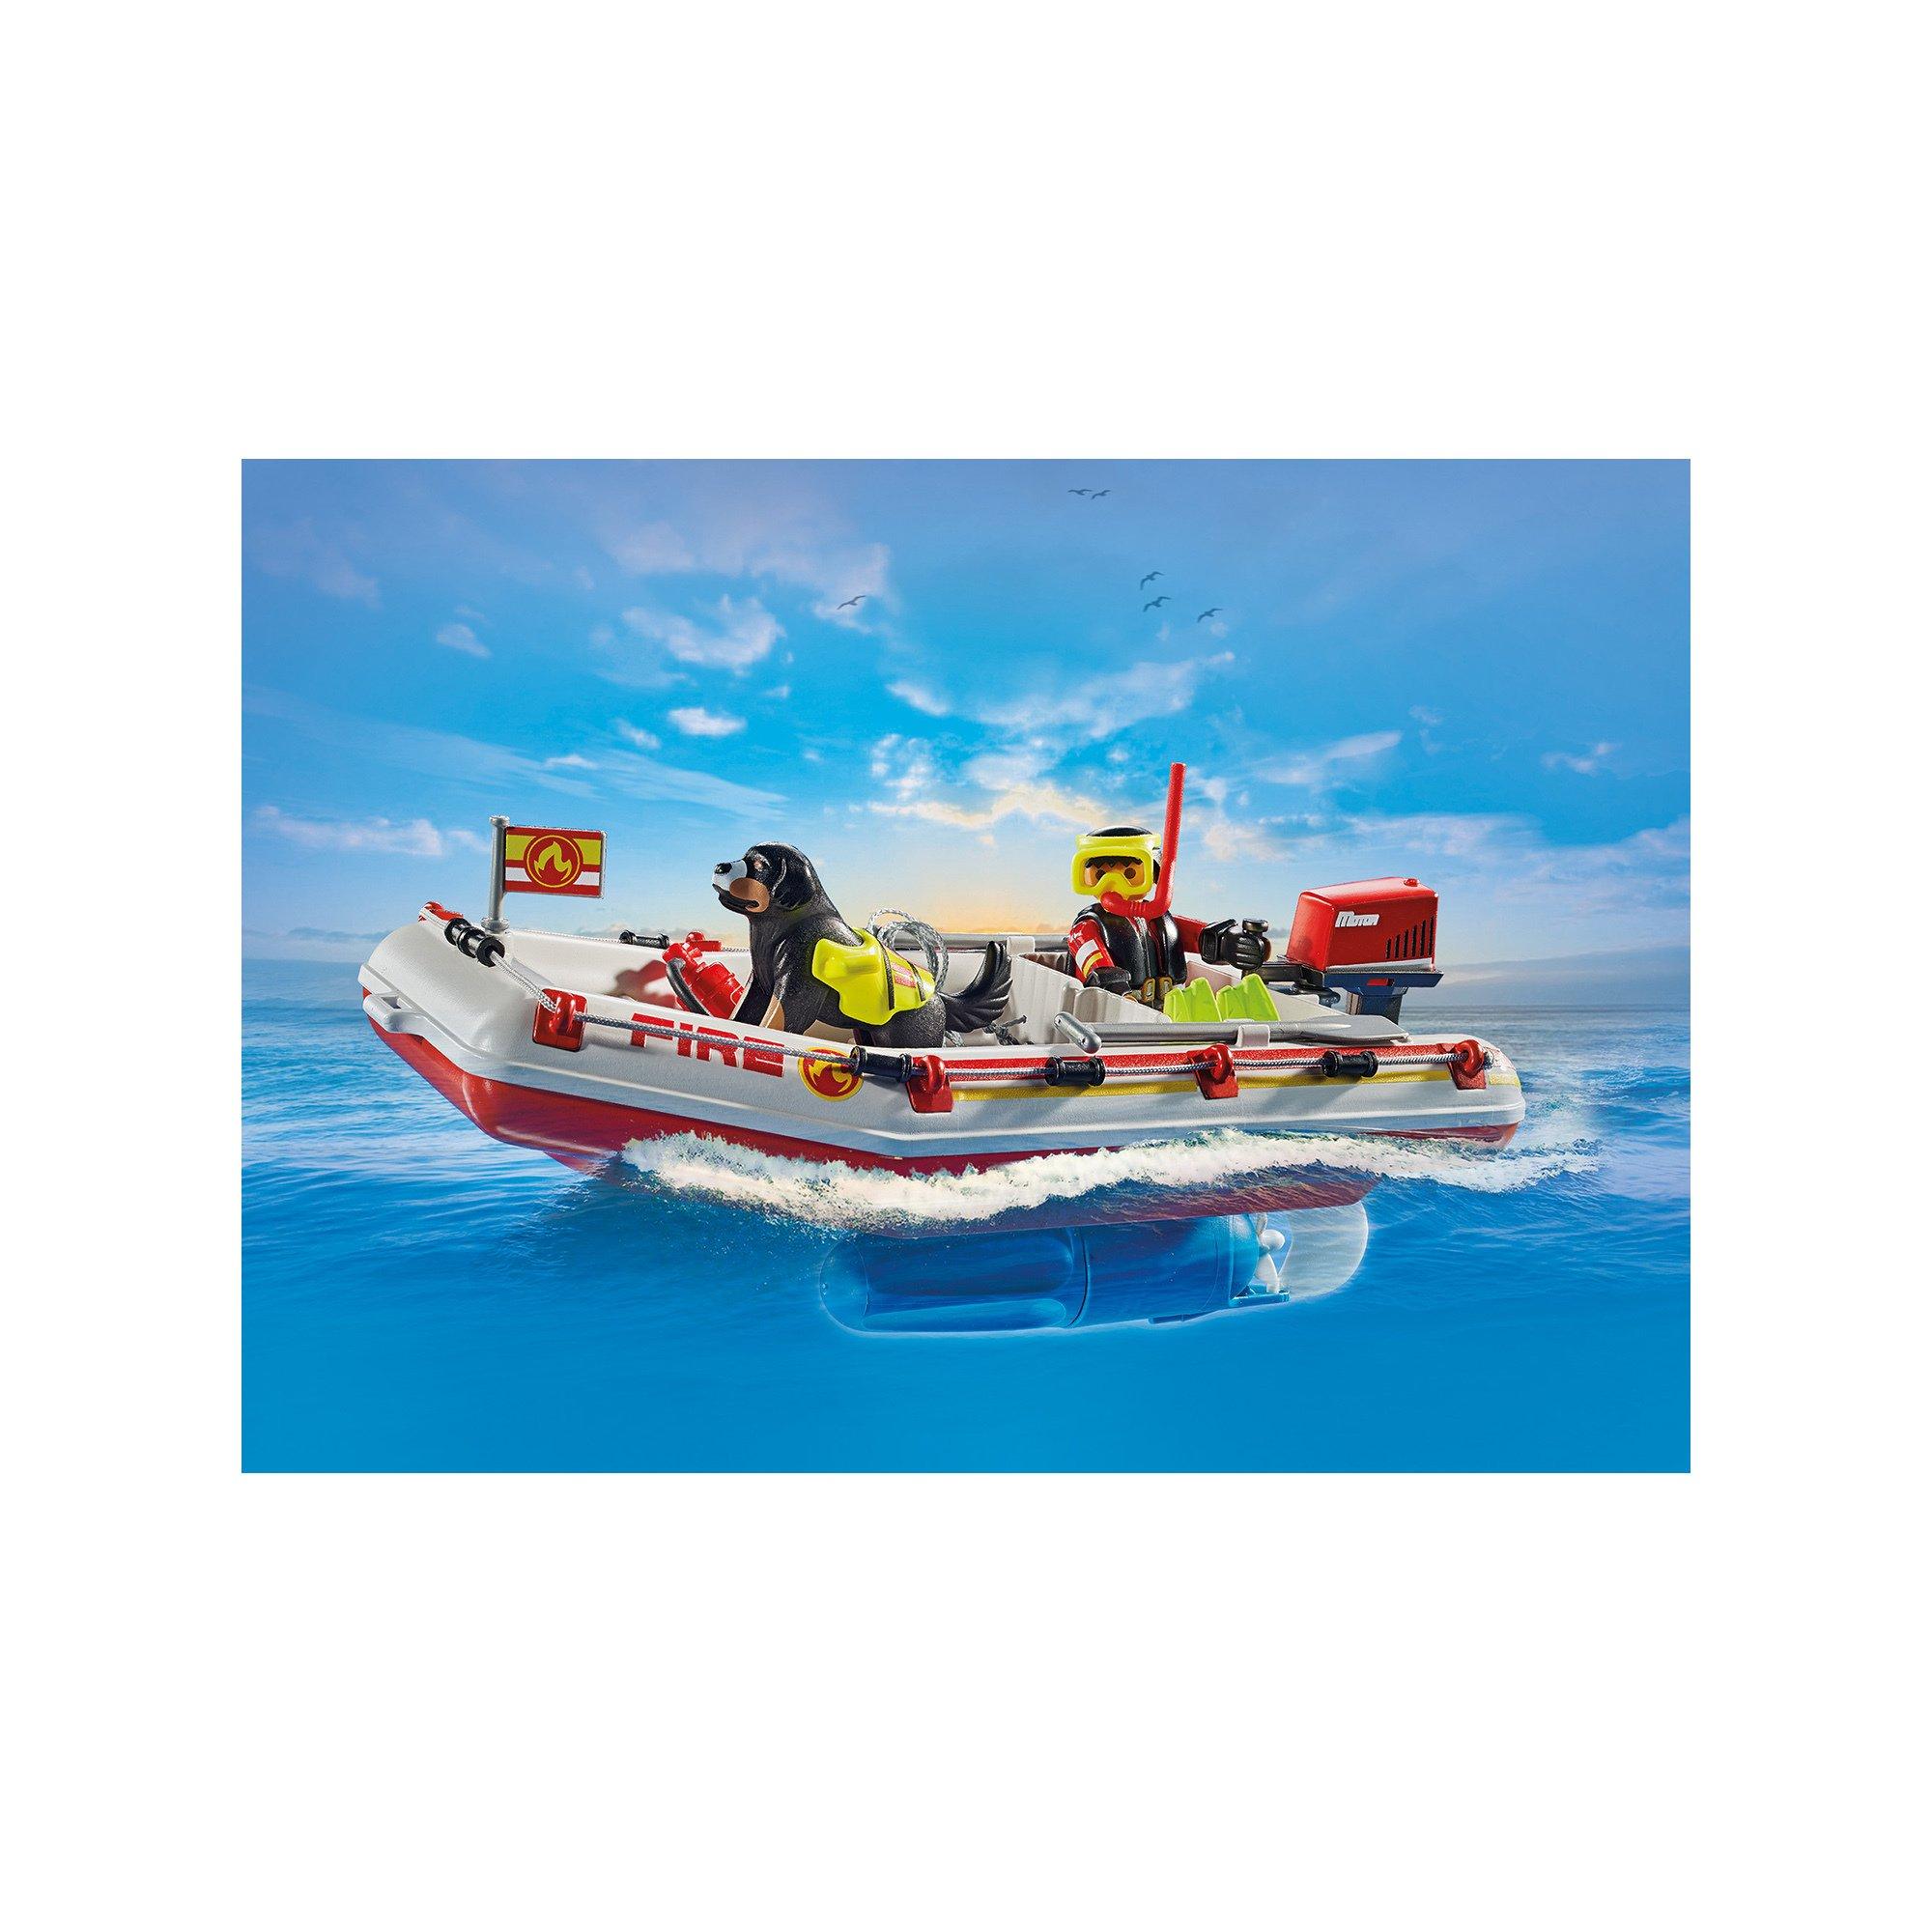 Playmobil  71464 Feuerwehrboot mit Aqua Scooter 